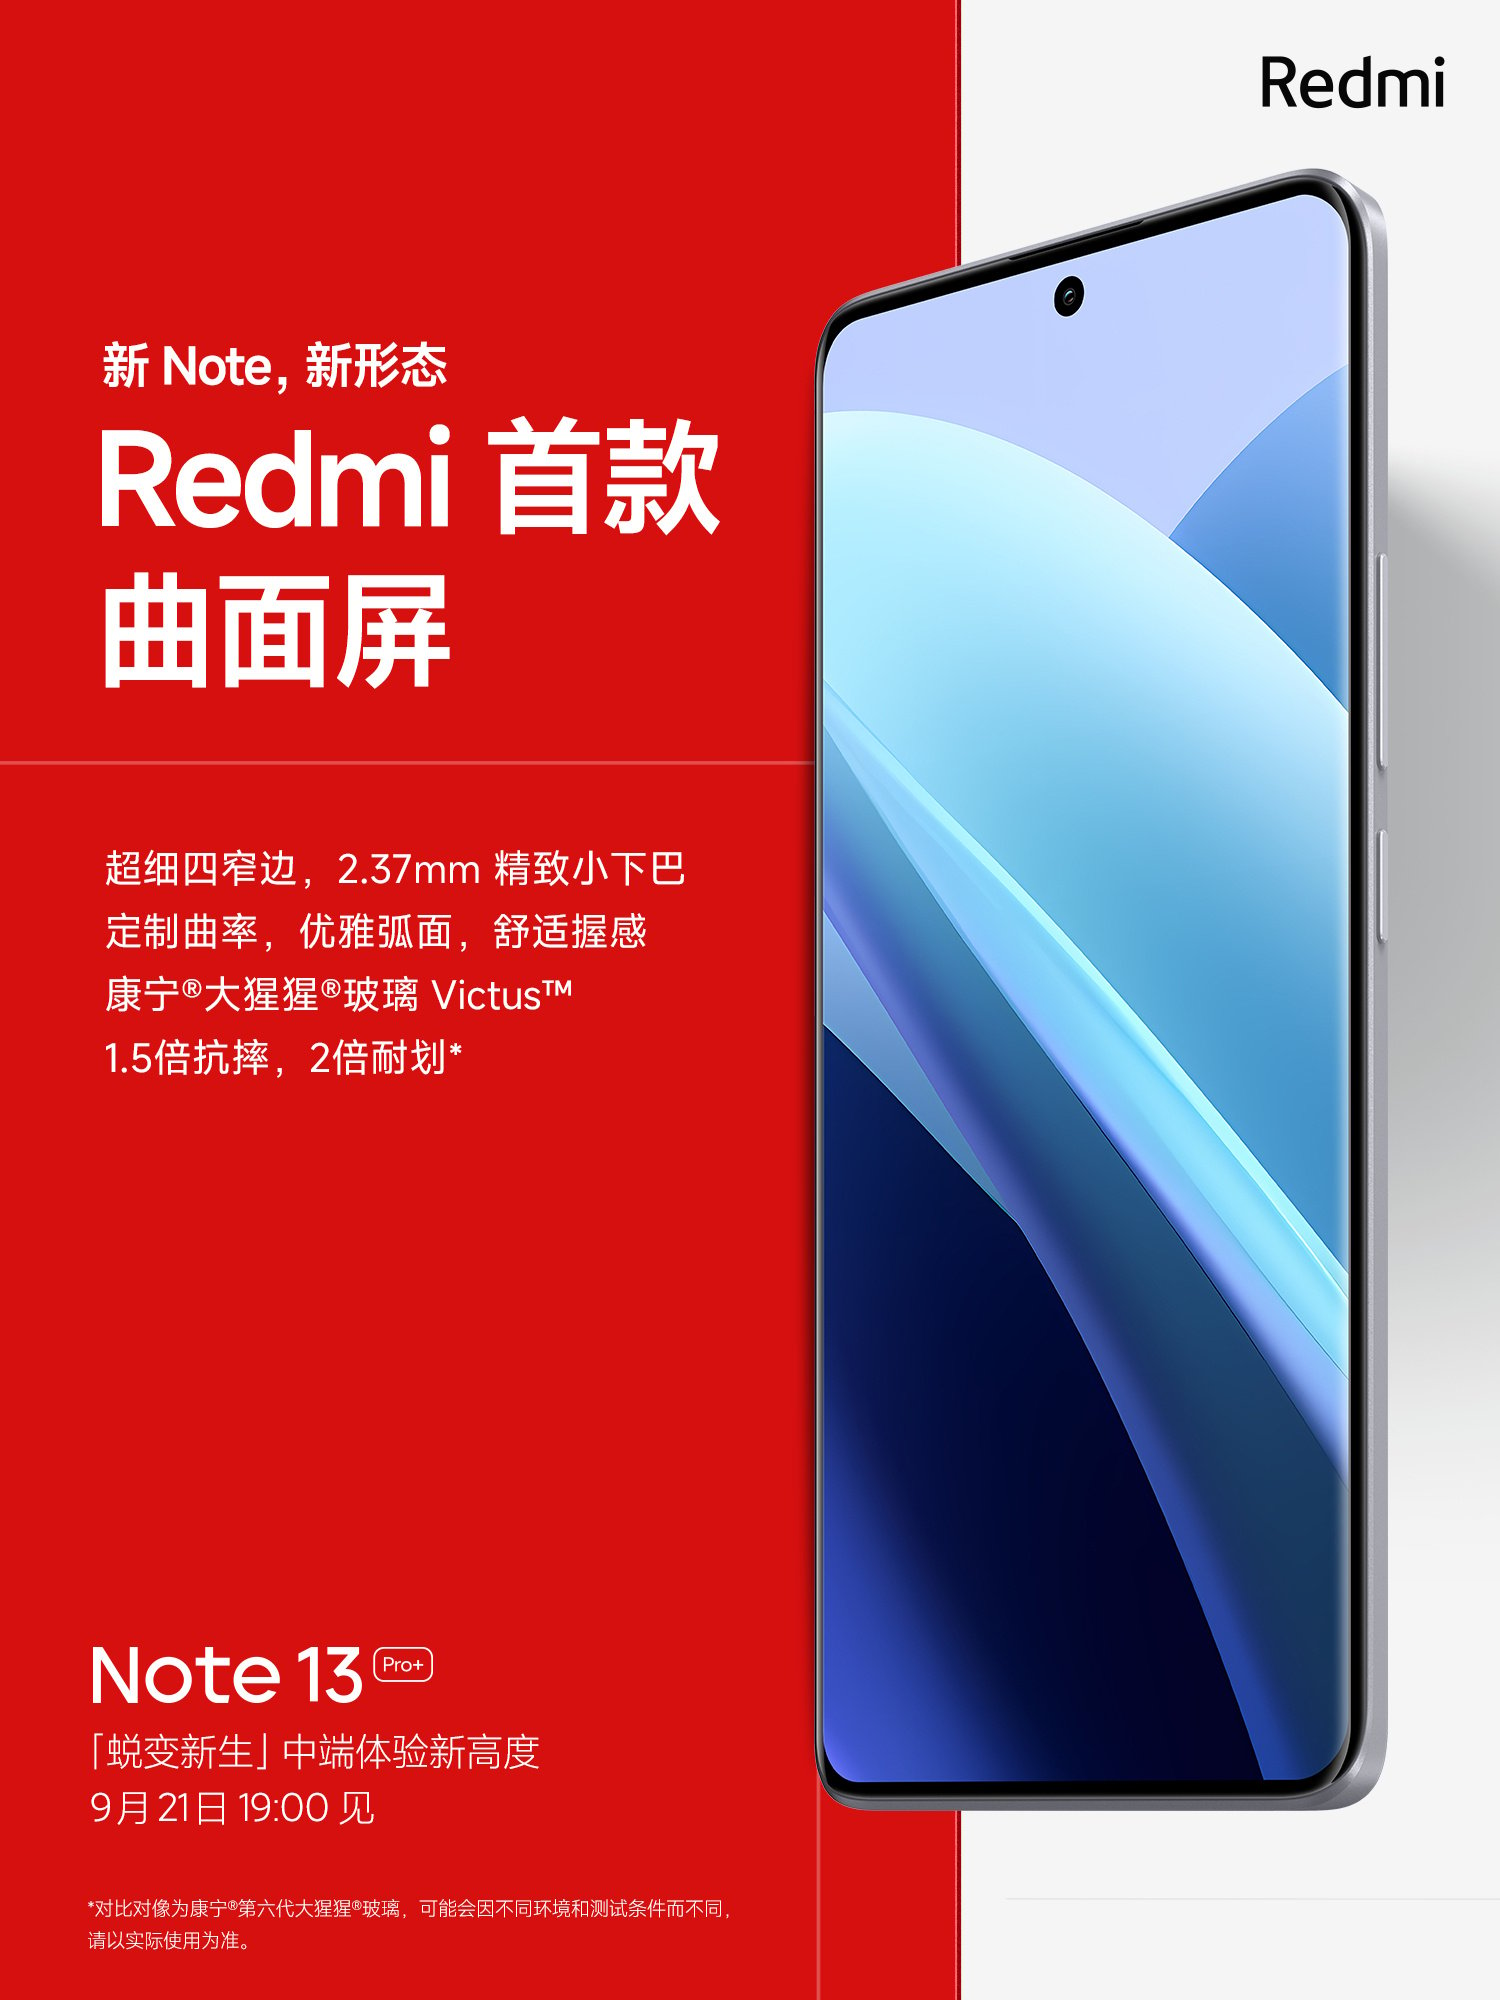 Redmi Note 13 Pro+ display details